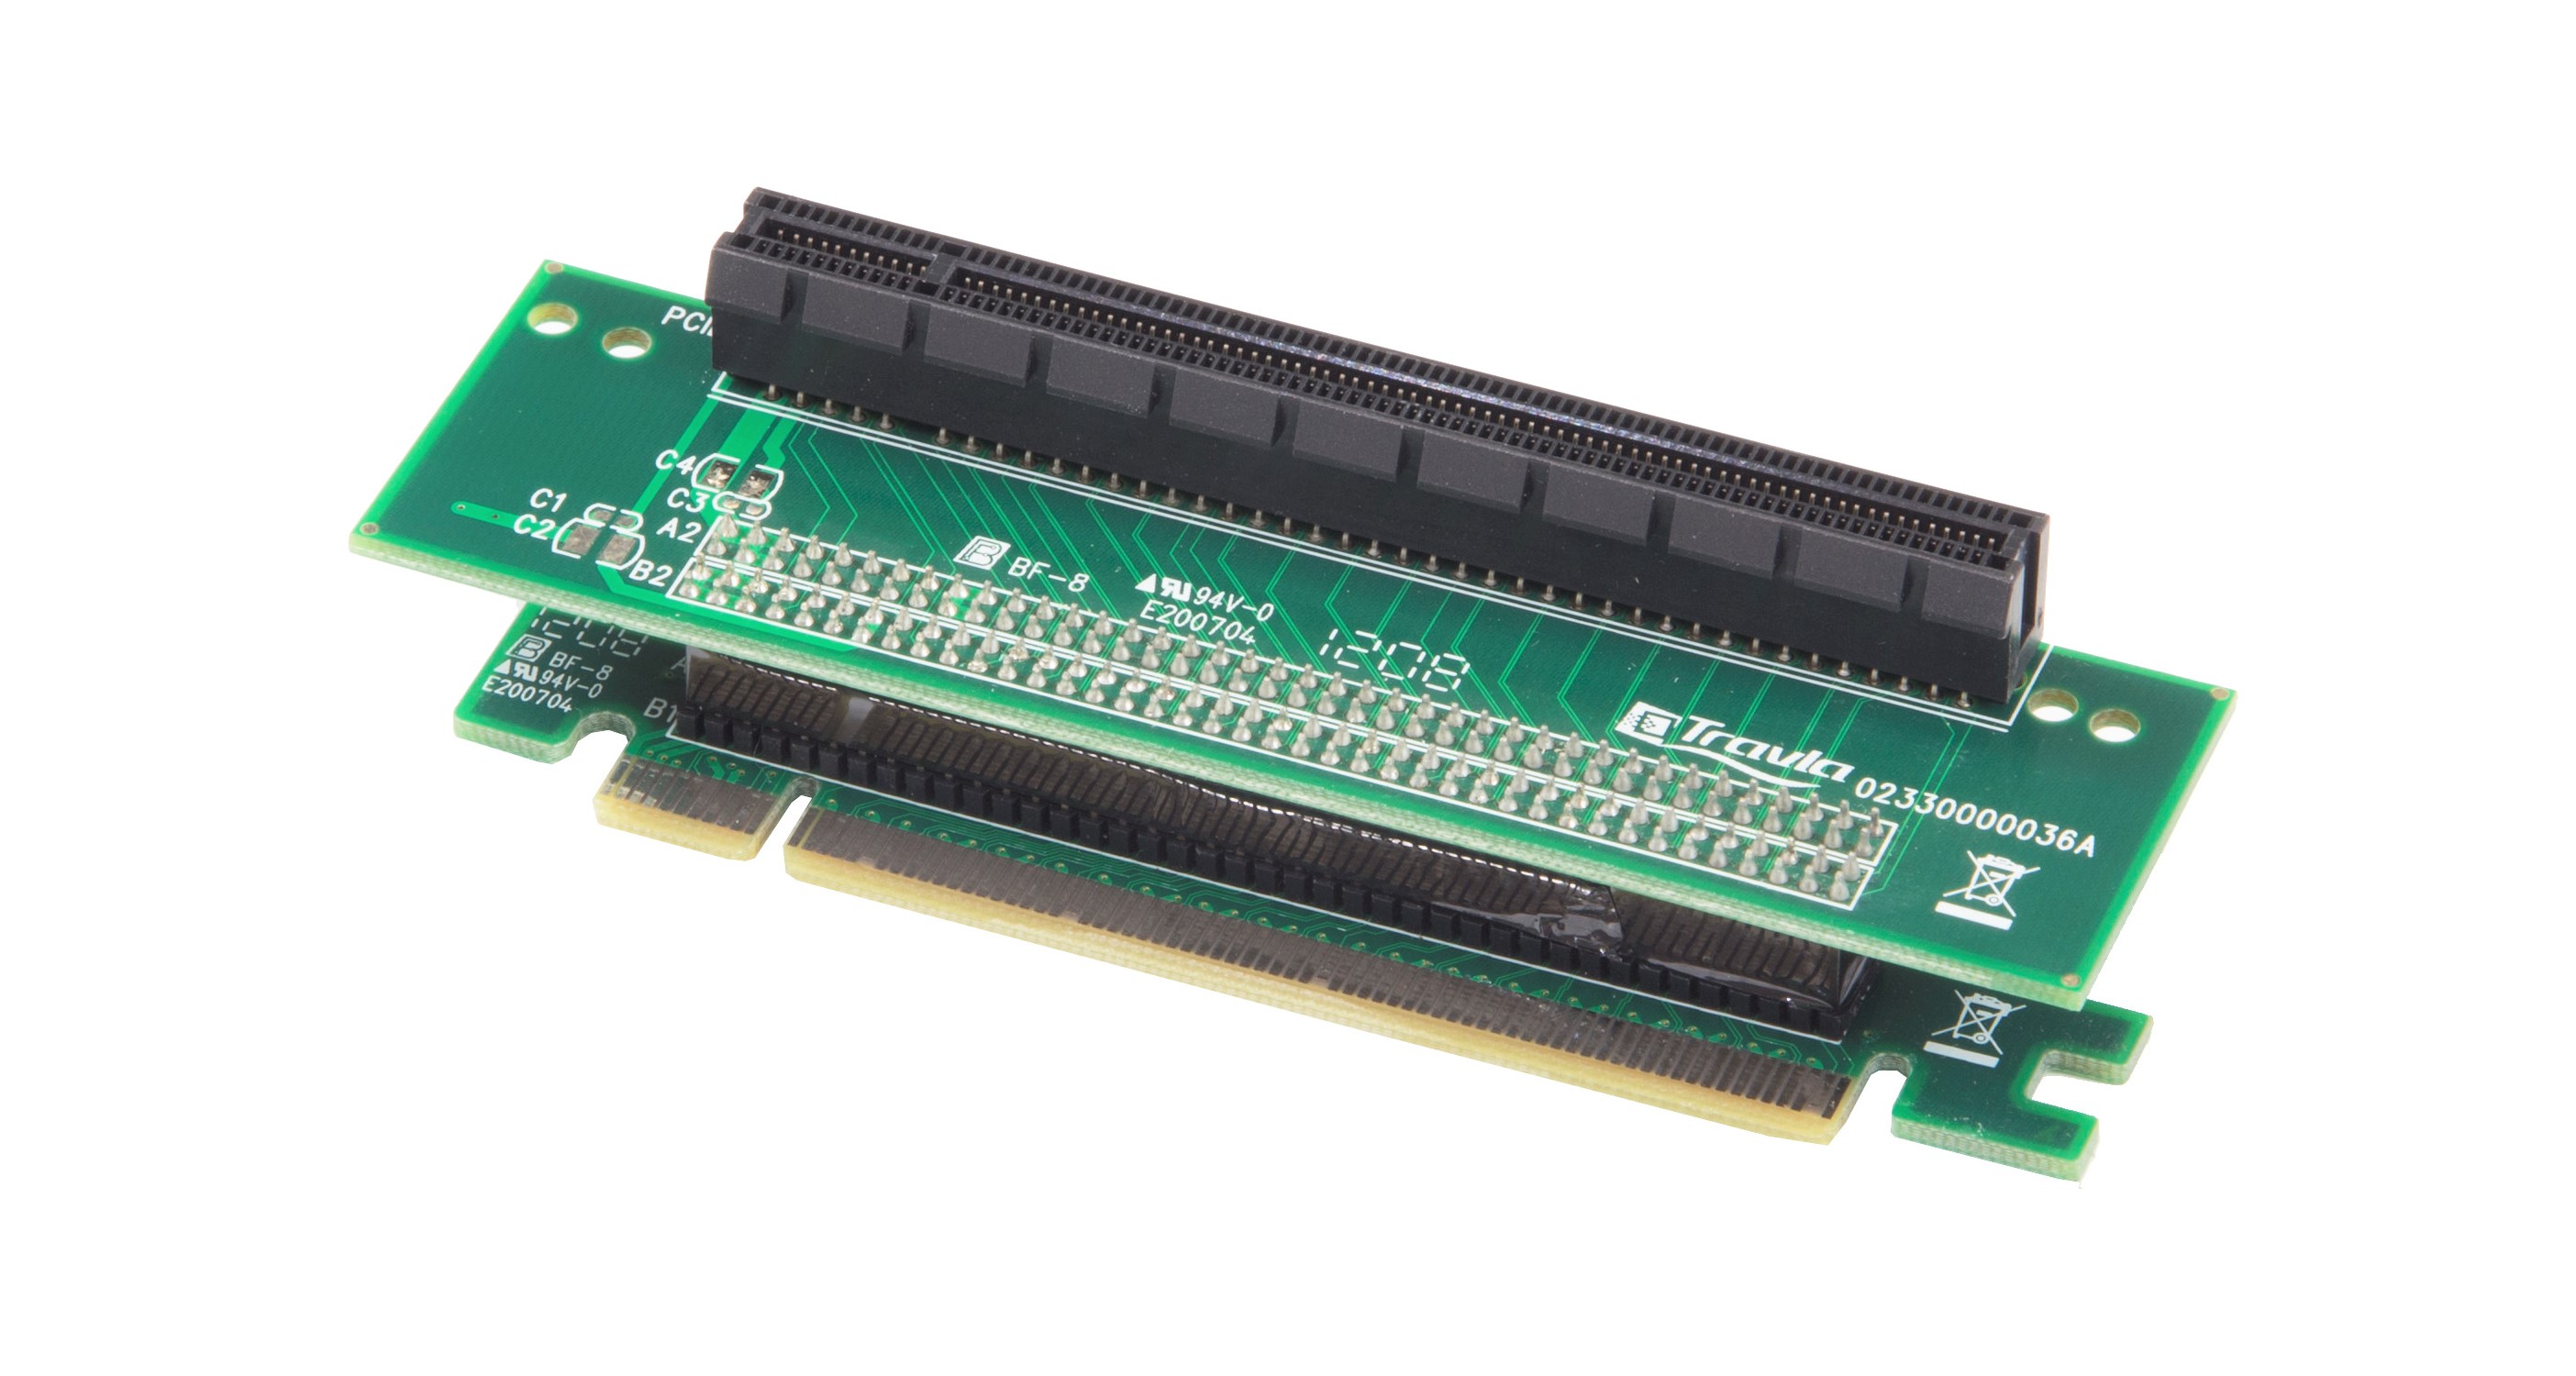 HAKO-C158 PCIe Riser Card  |Products|Accessories|PCI-Express Riser Card